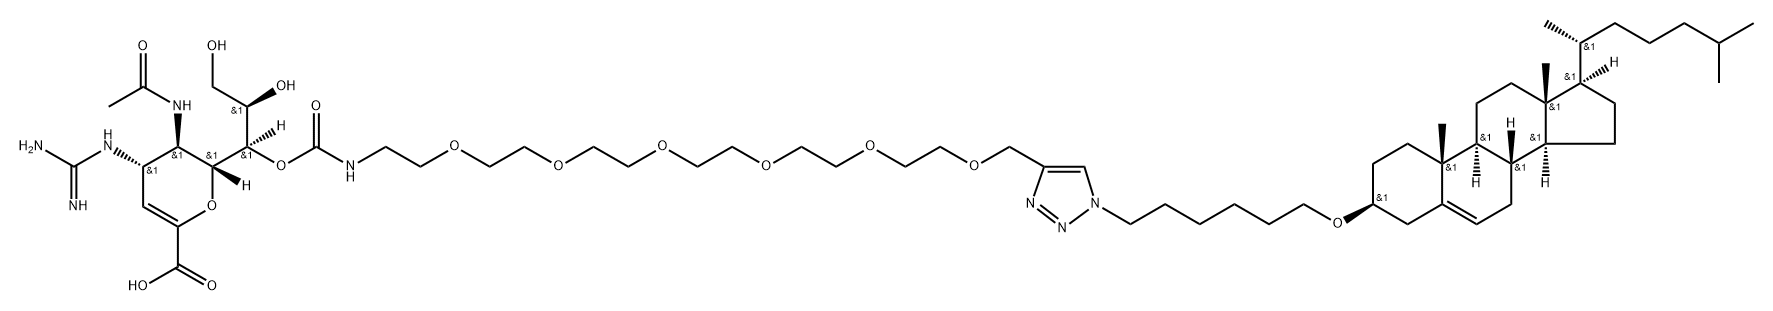 D-glycero-D-galacto-Non-2-enonic acid, 5-(acetylamino)-4-[(aminoiminomethyl)amino]-2,6-anhydro-3,4,5-trideoxy-, 7-[21-[1-[6-[(3β)-cholest-5-en-3-yloxy]hexyl]-1H-1,2,3-triazol-4-yl]-5,8,11,14,17,20-hexaoxa-2-azaheneicosanoate]|